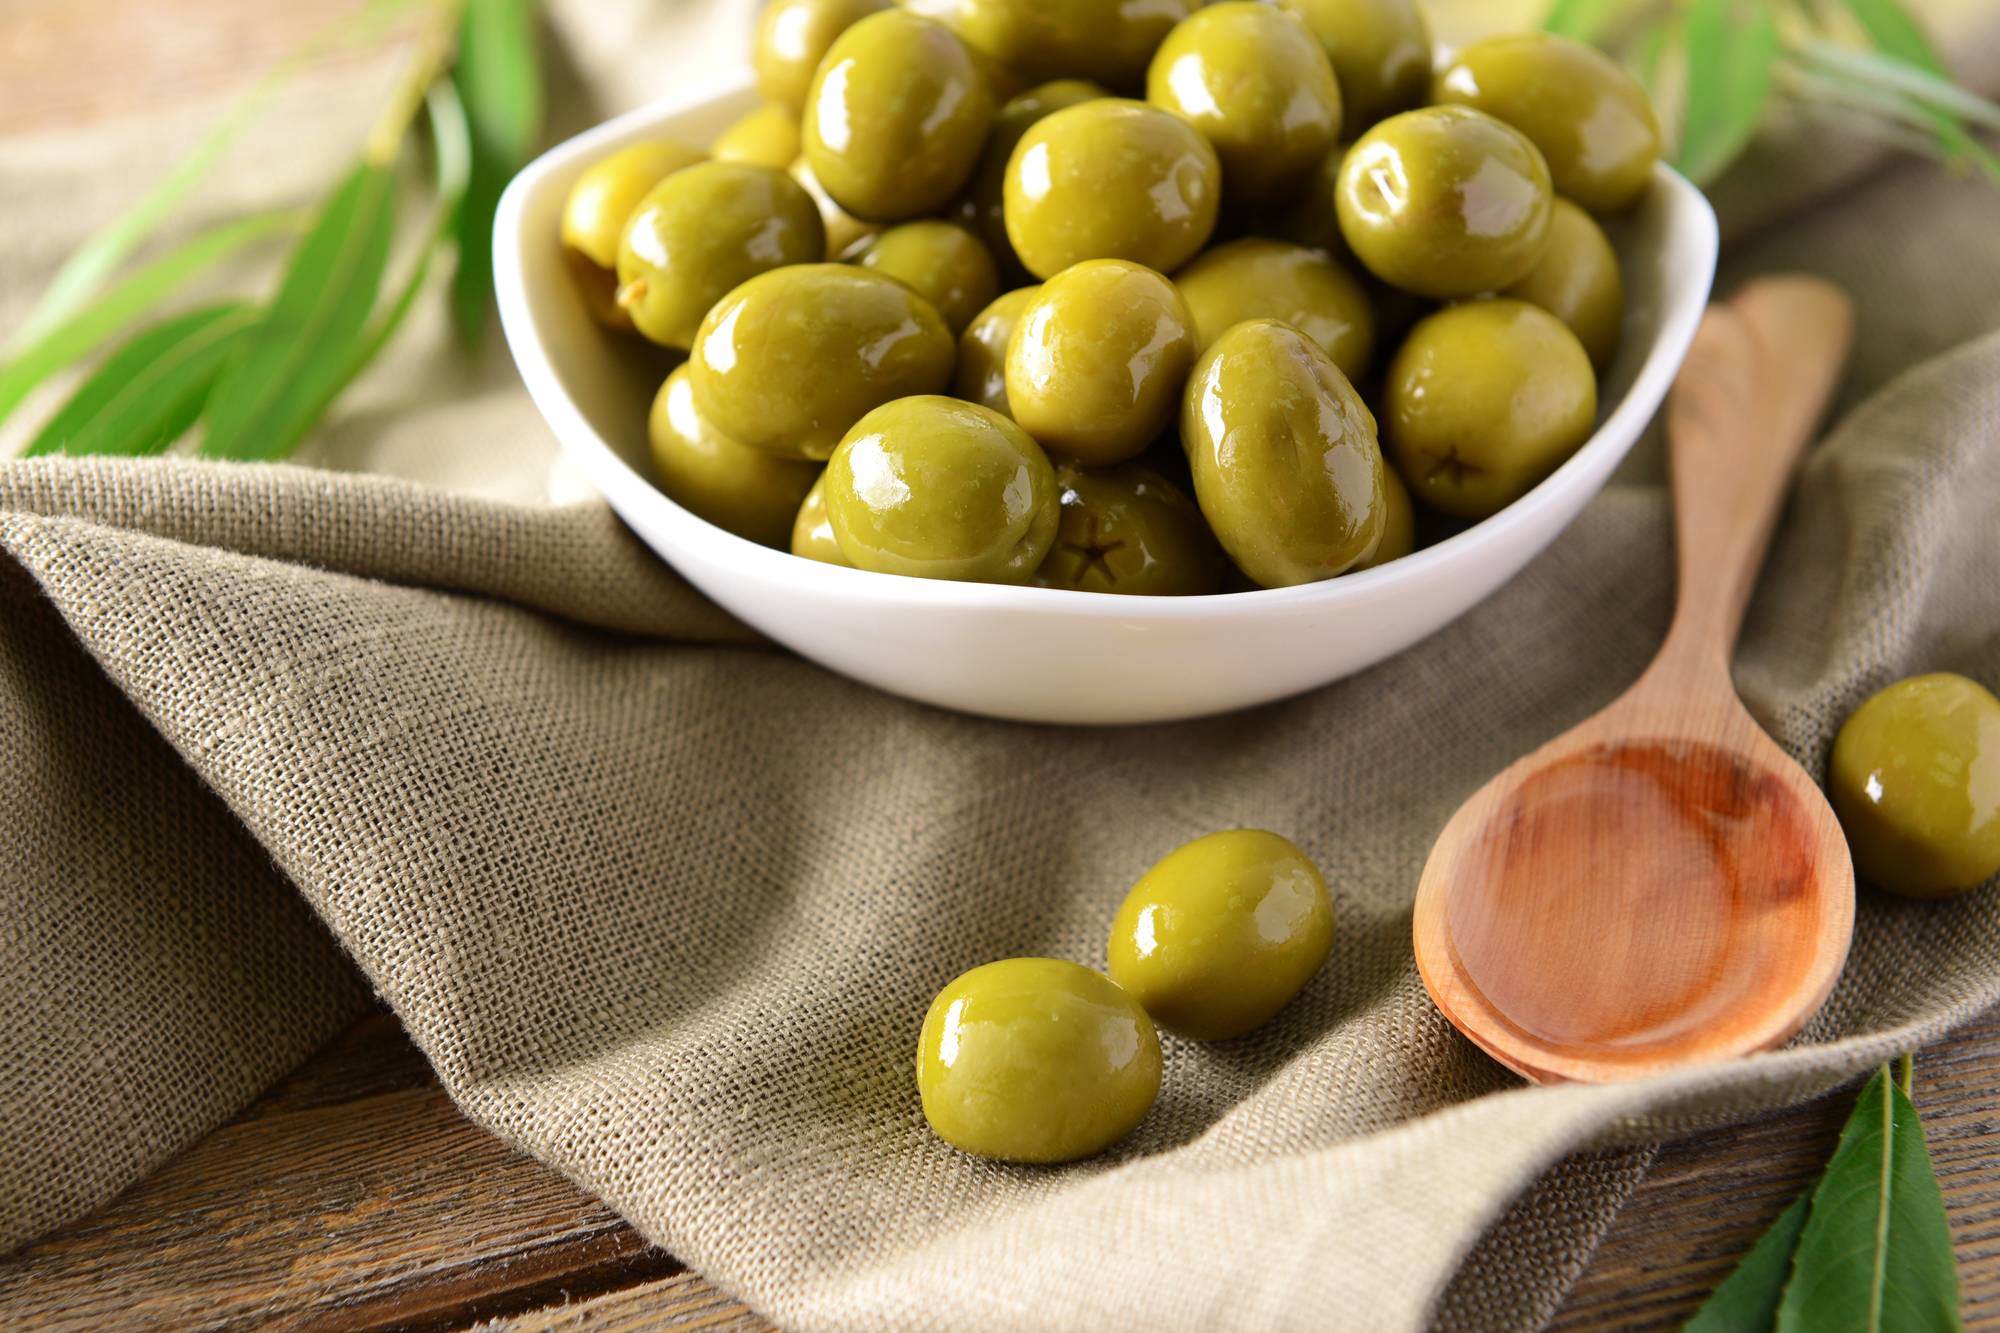 Чем отличаются оливки от маслин и что полезнее?